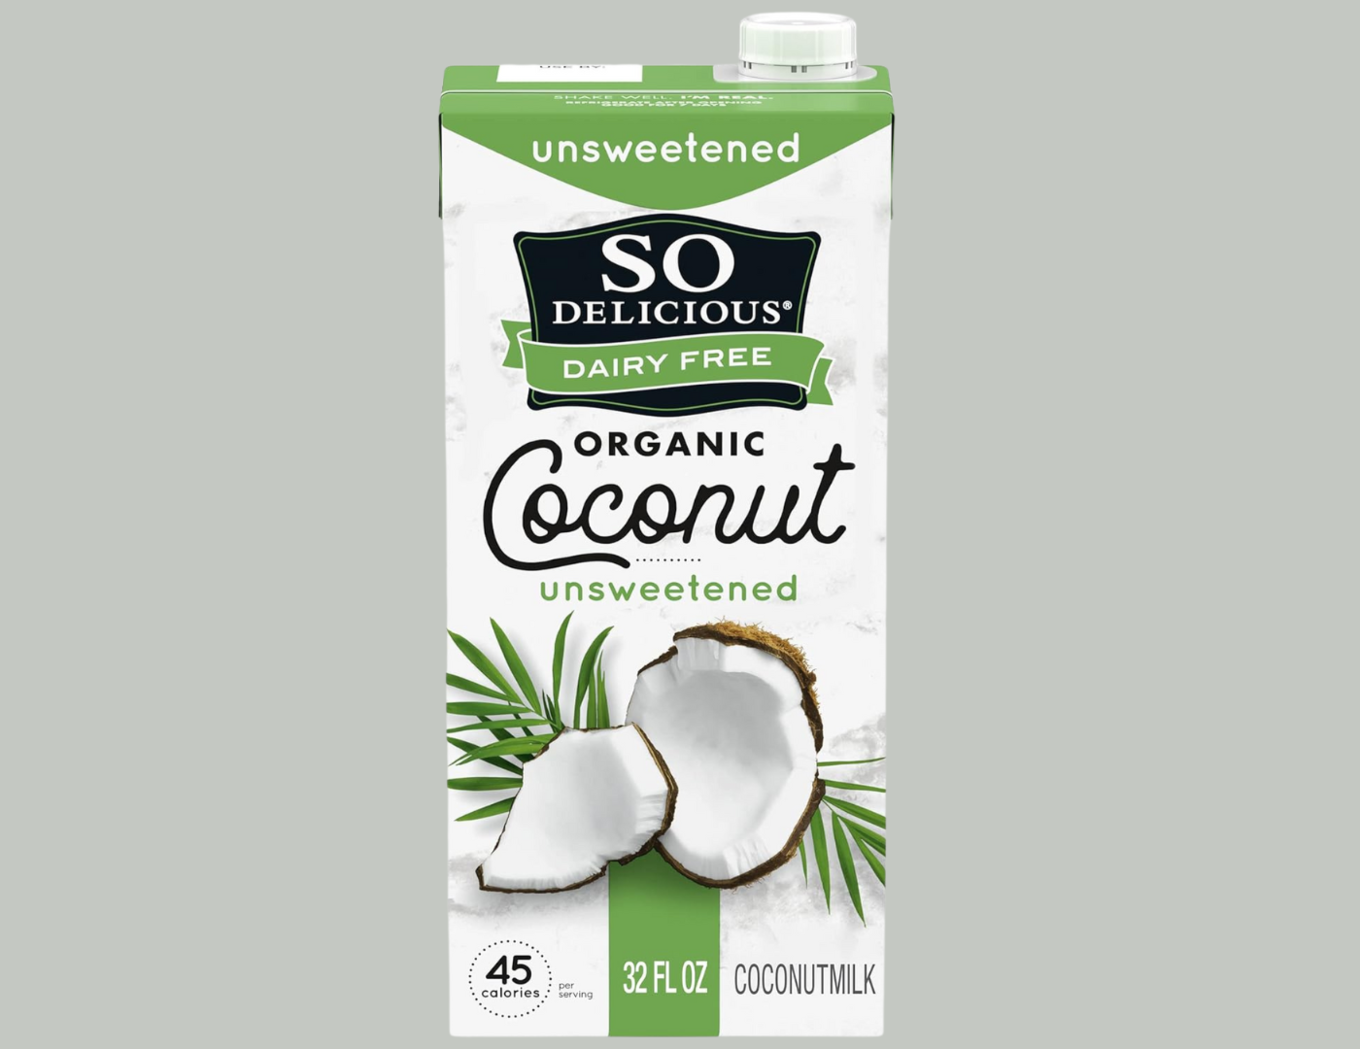 VegNews.sodeliciouscoconutmilk